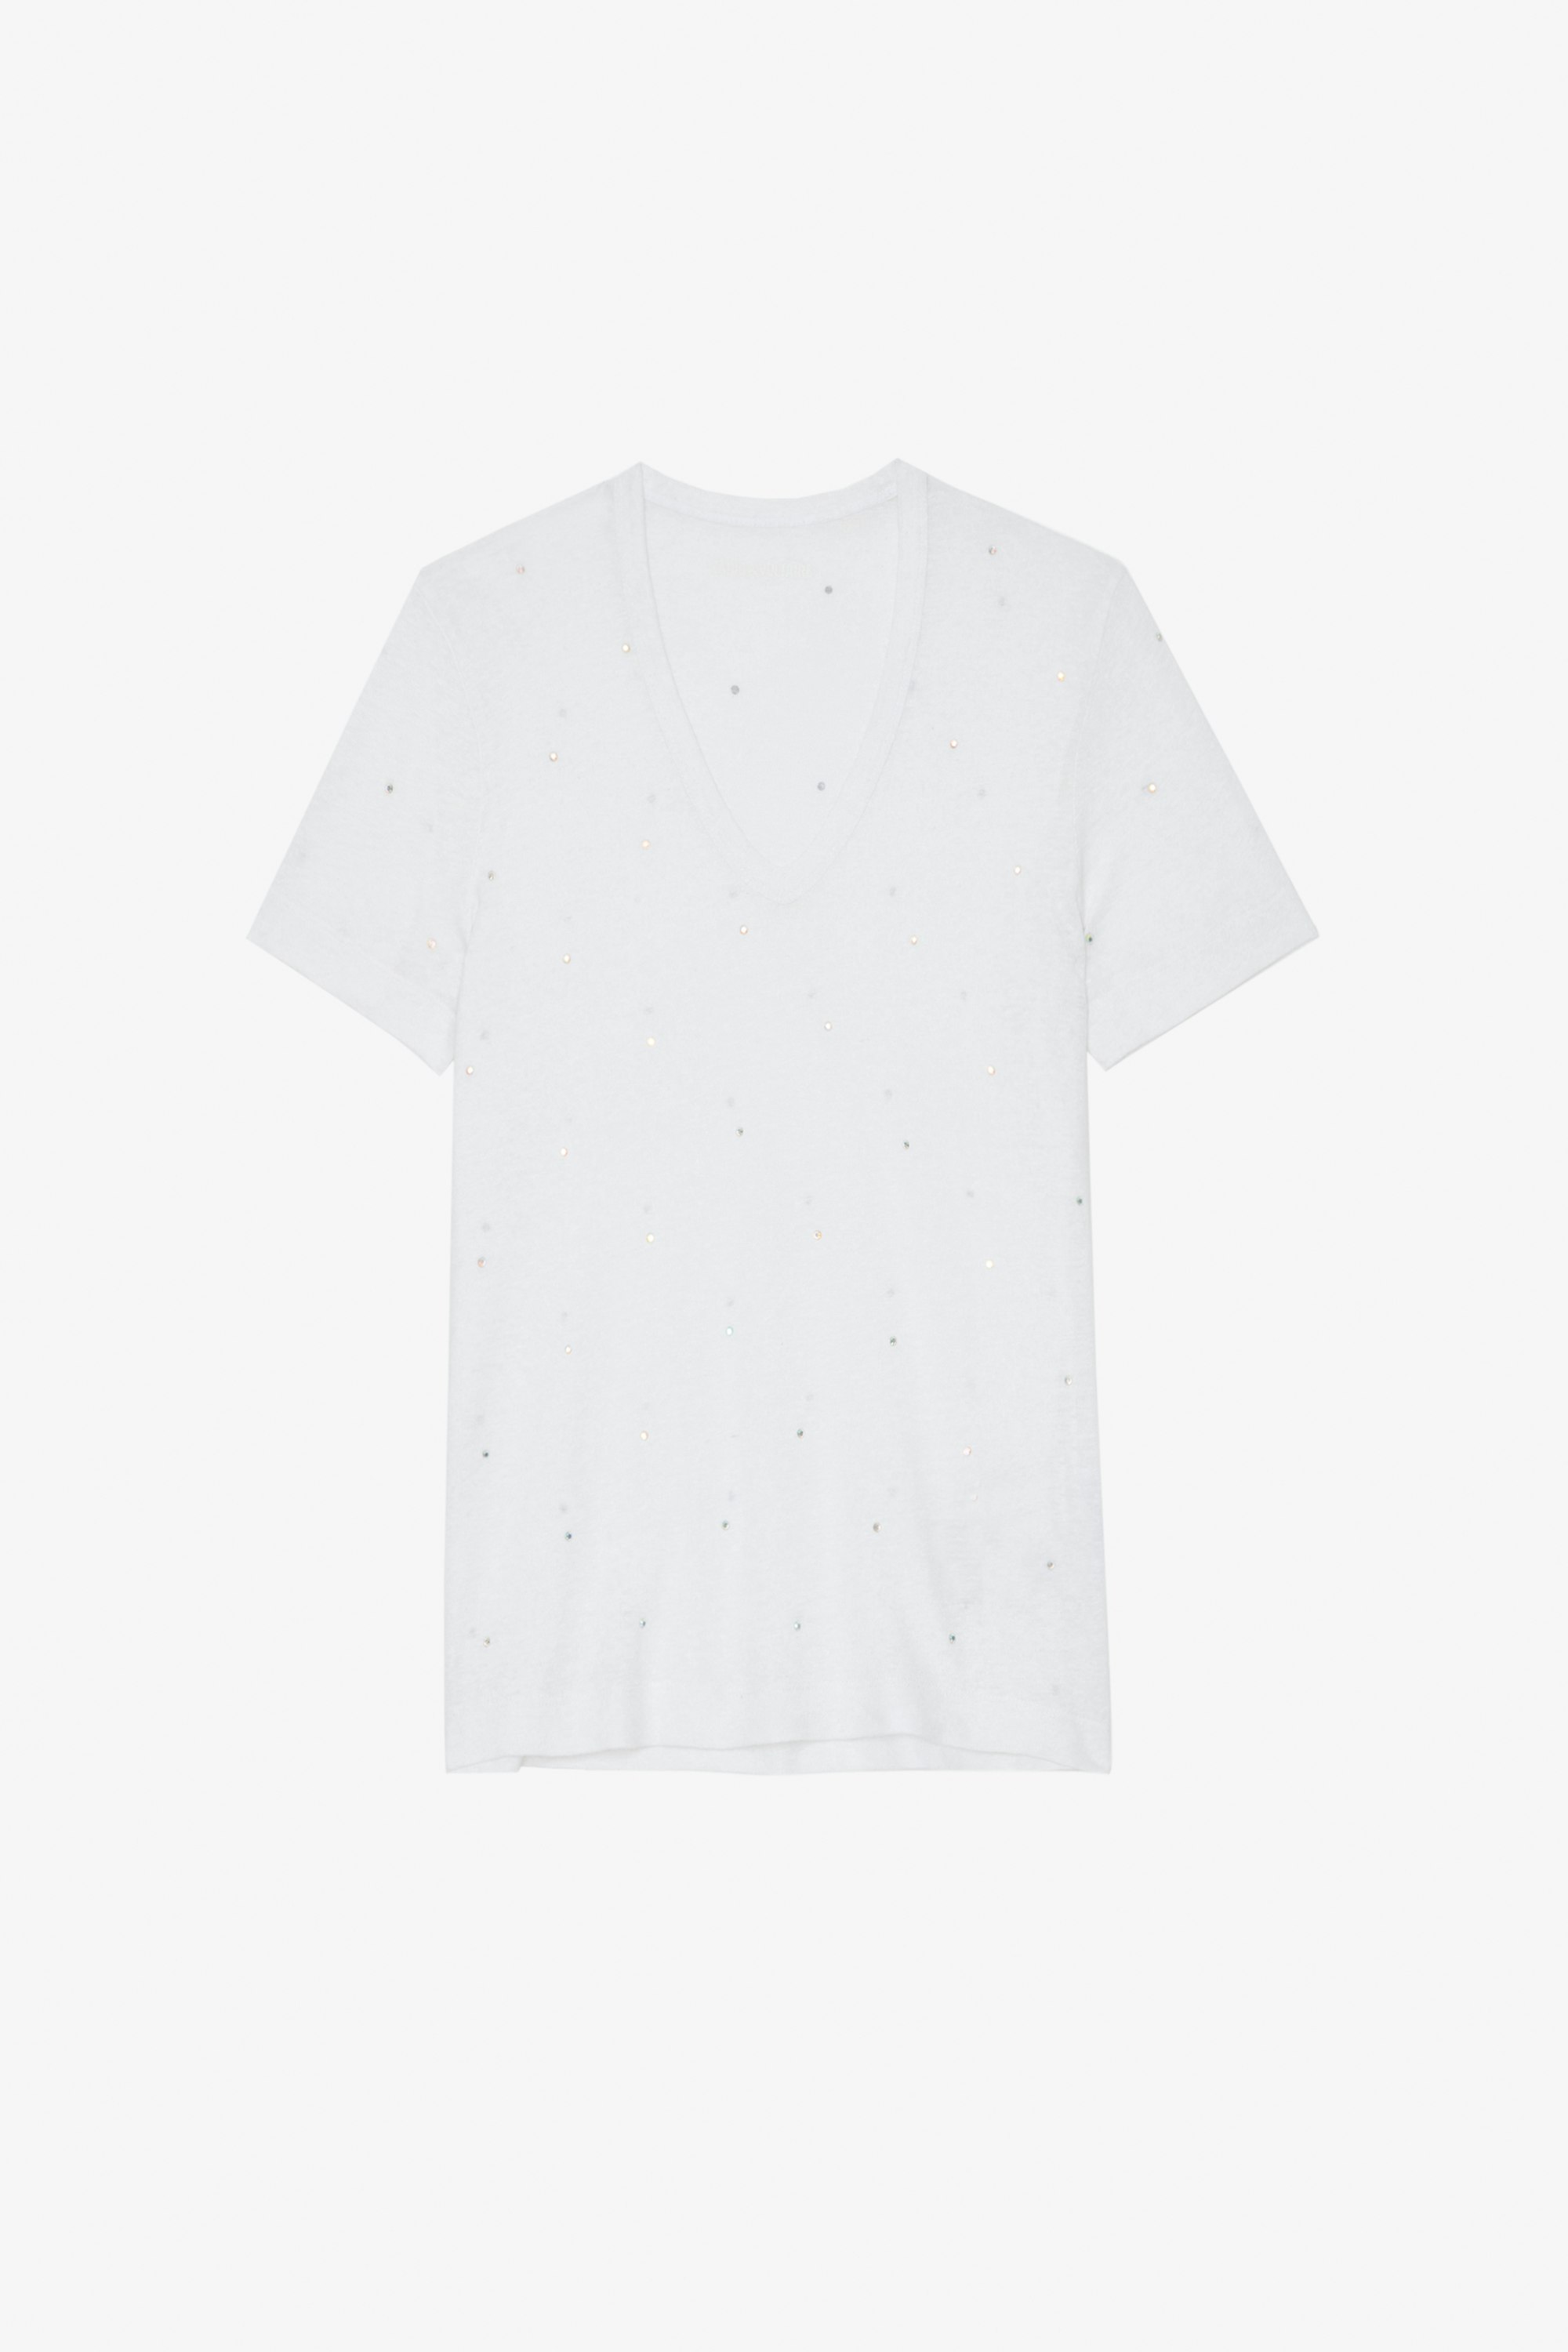 Wassa T-shirt - Women's white rhinestone-studded T-shirt